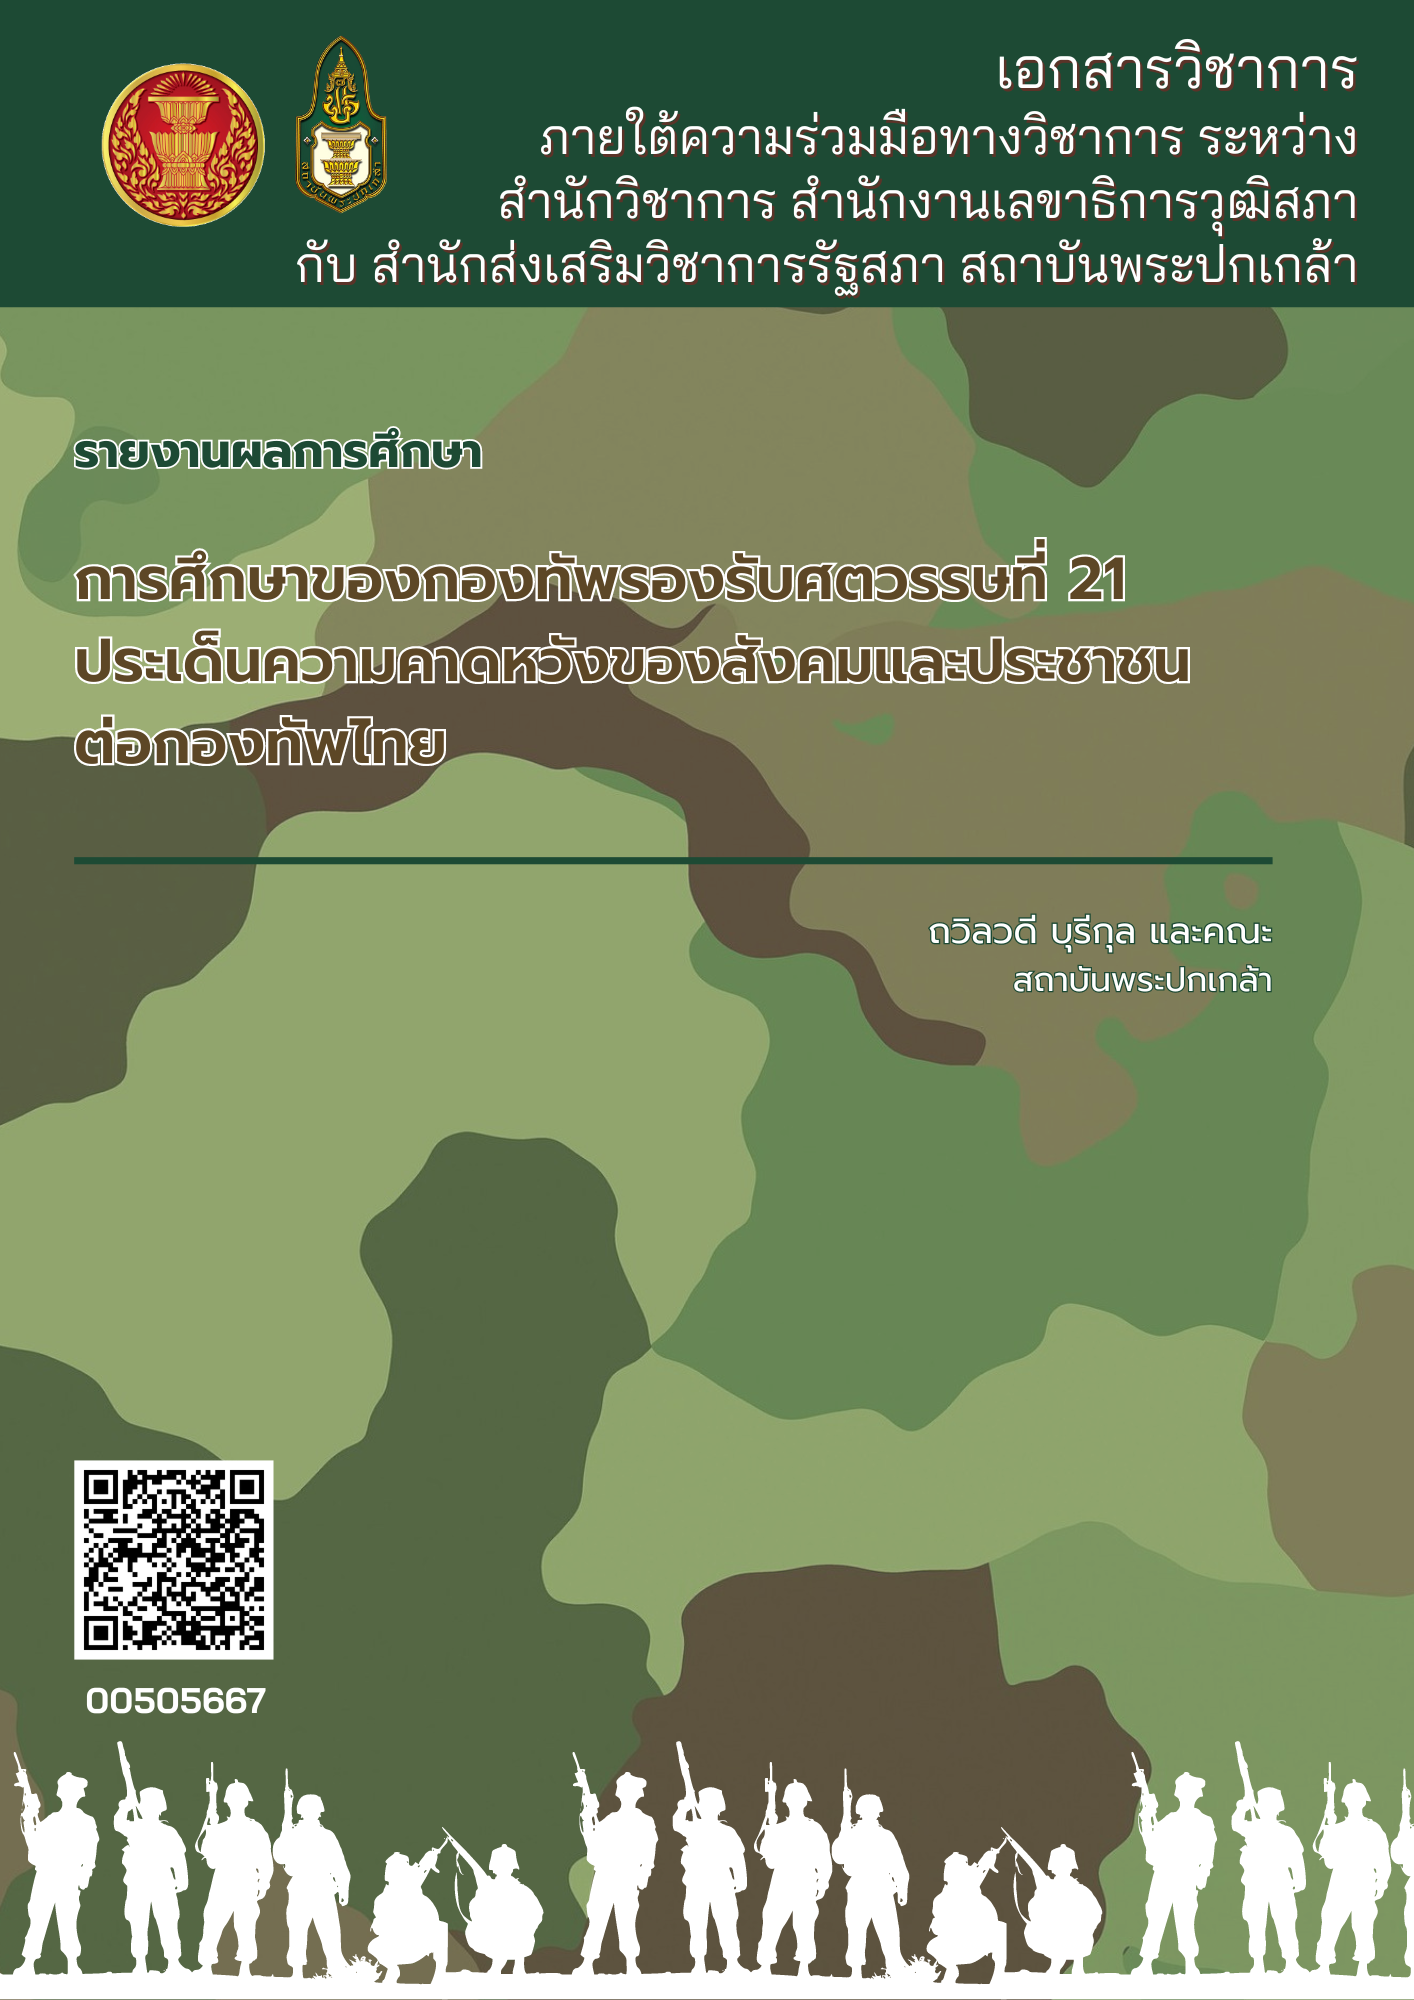 การศึกษาของกองทัพรองรับศตวรรษที่ 21 ประเด็นความคาดหวังของสังคมและประชาชนต่อกองทัพไทย